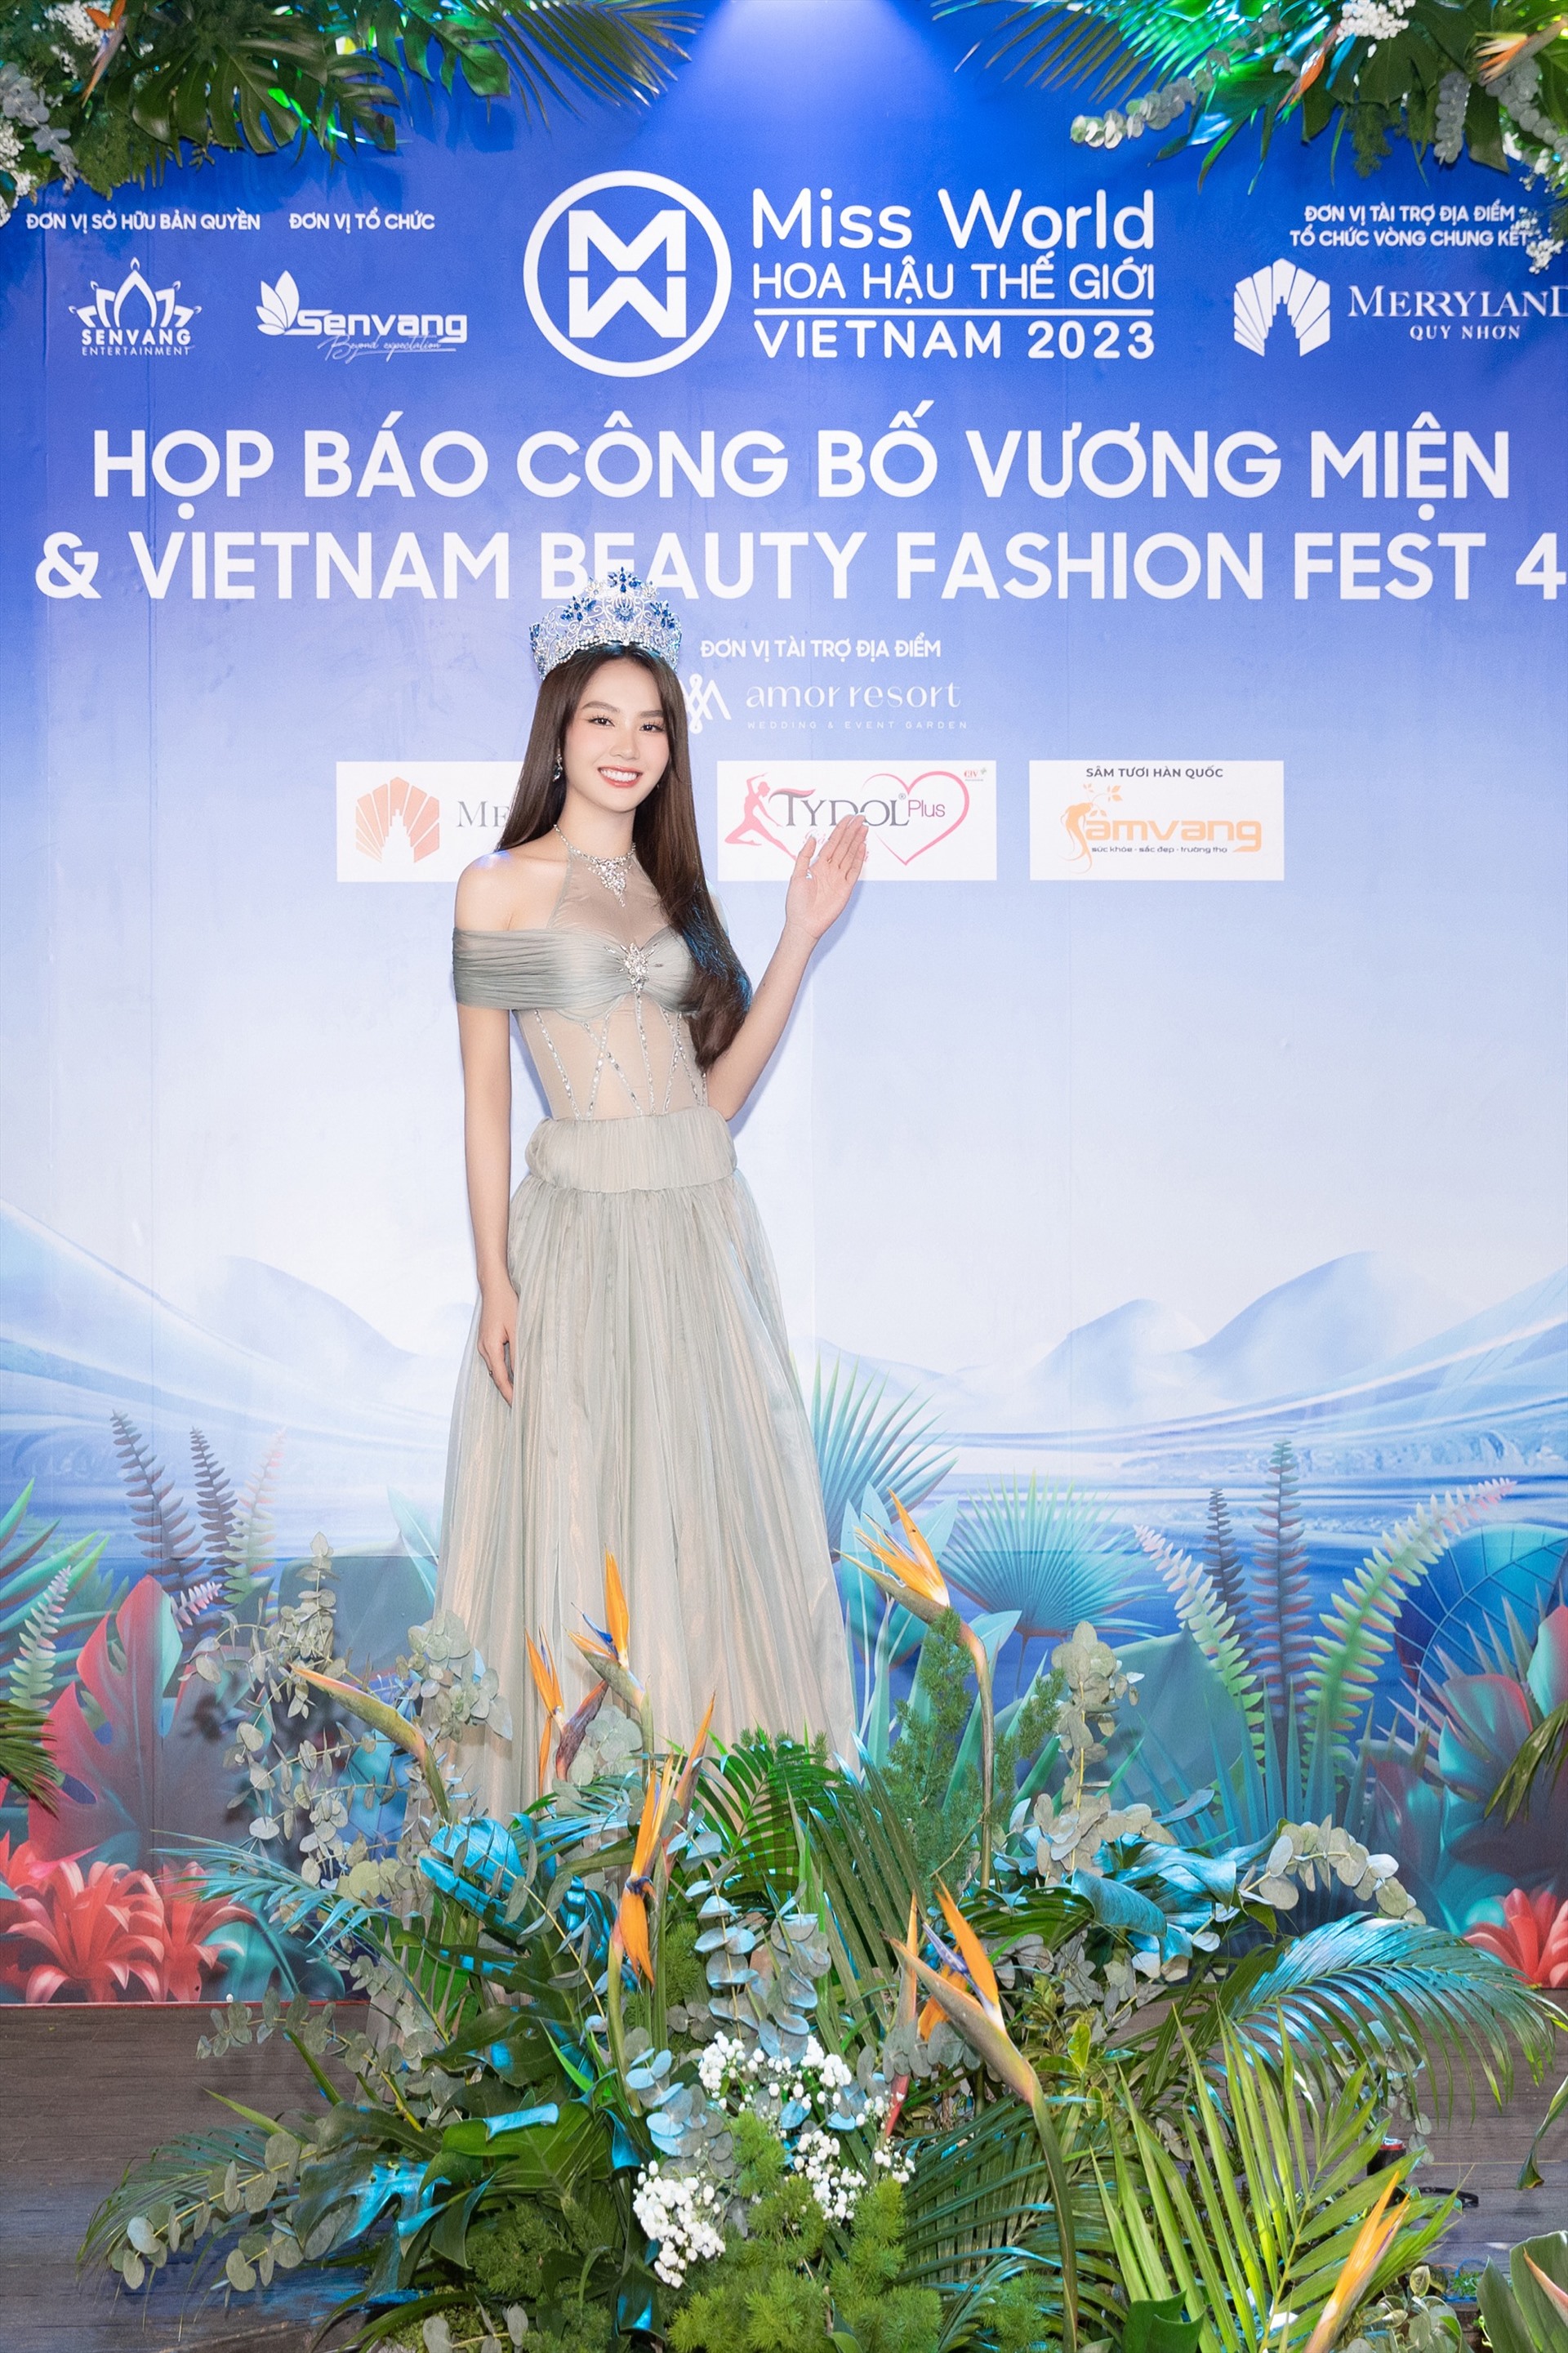 Đương kim Miss World Vietnam 2023 Mai Phương gây chú ý với thần thái cùng càng thăng hạng. Theo đó nàng hậu diện một chiếc váy với phần eo được cách điệu với dải lưới xuyên thấu.